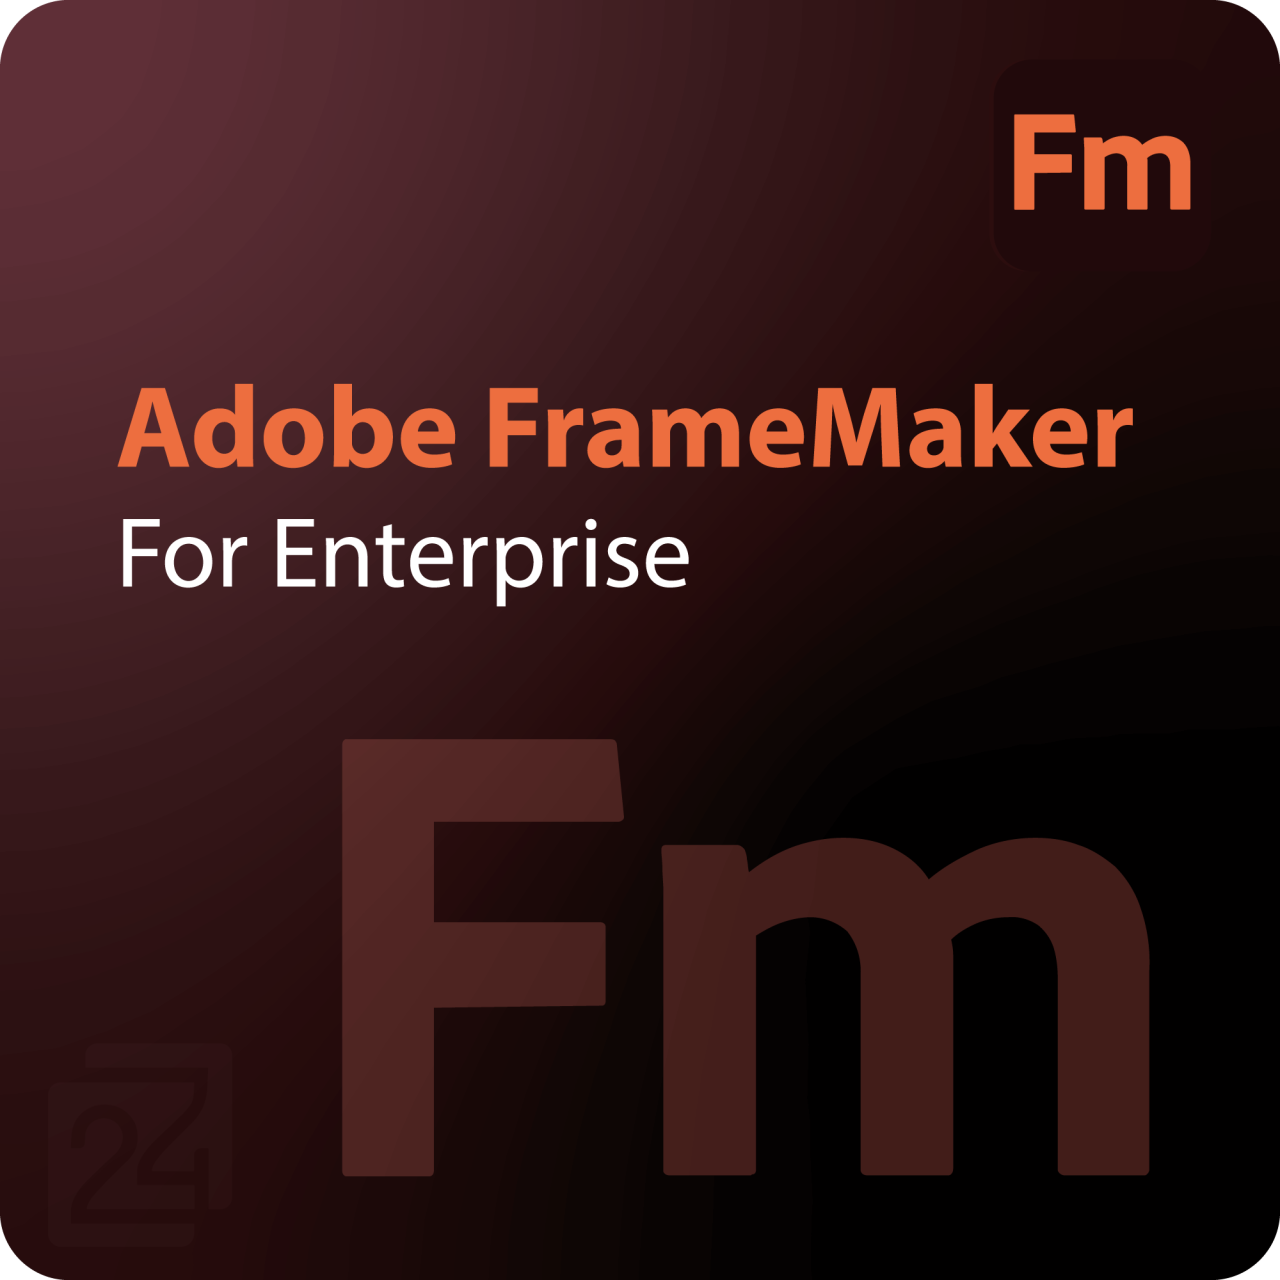 Adobe FrameMaker for Enterprise